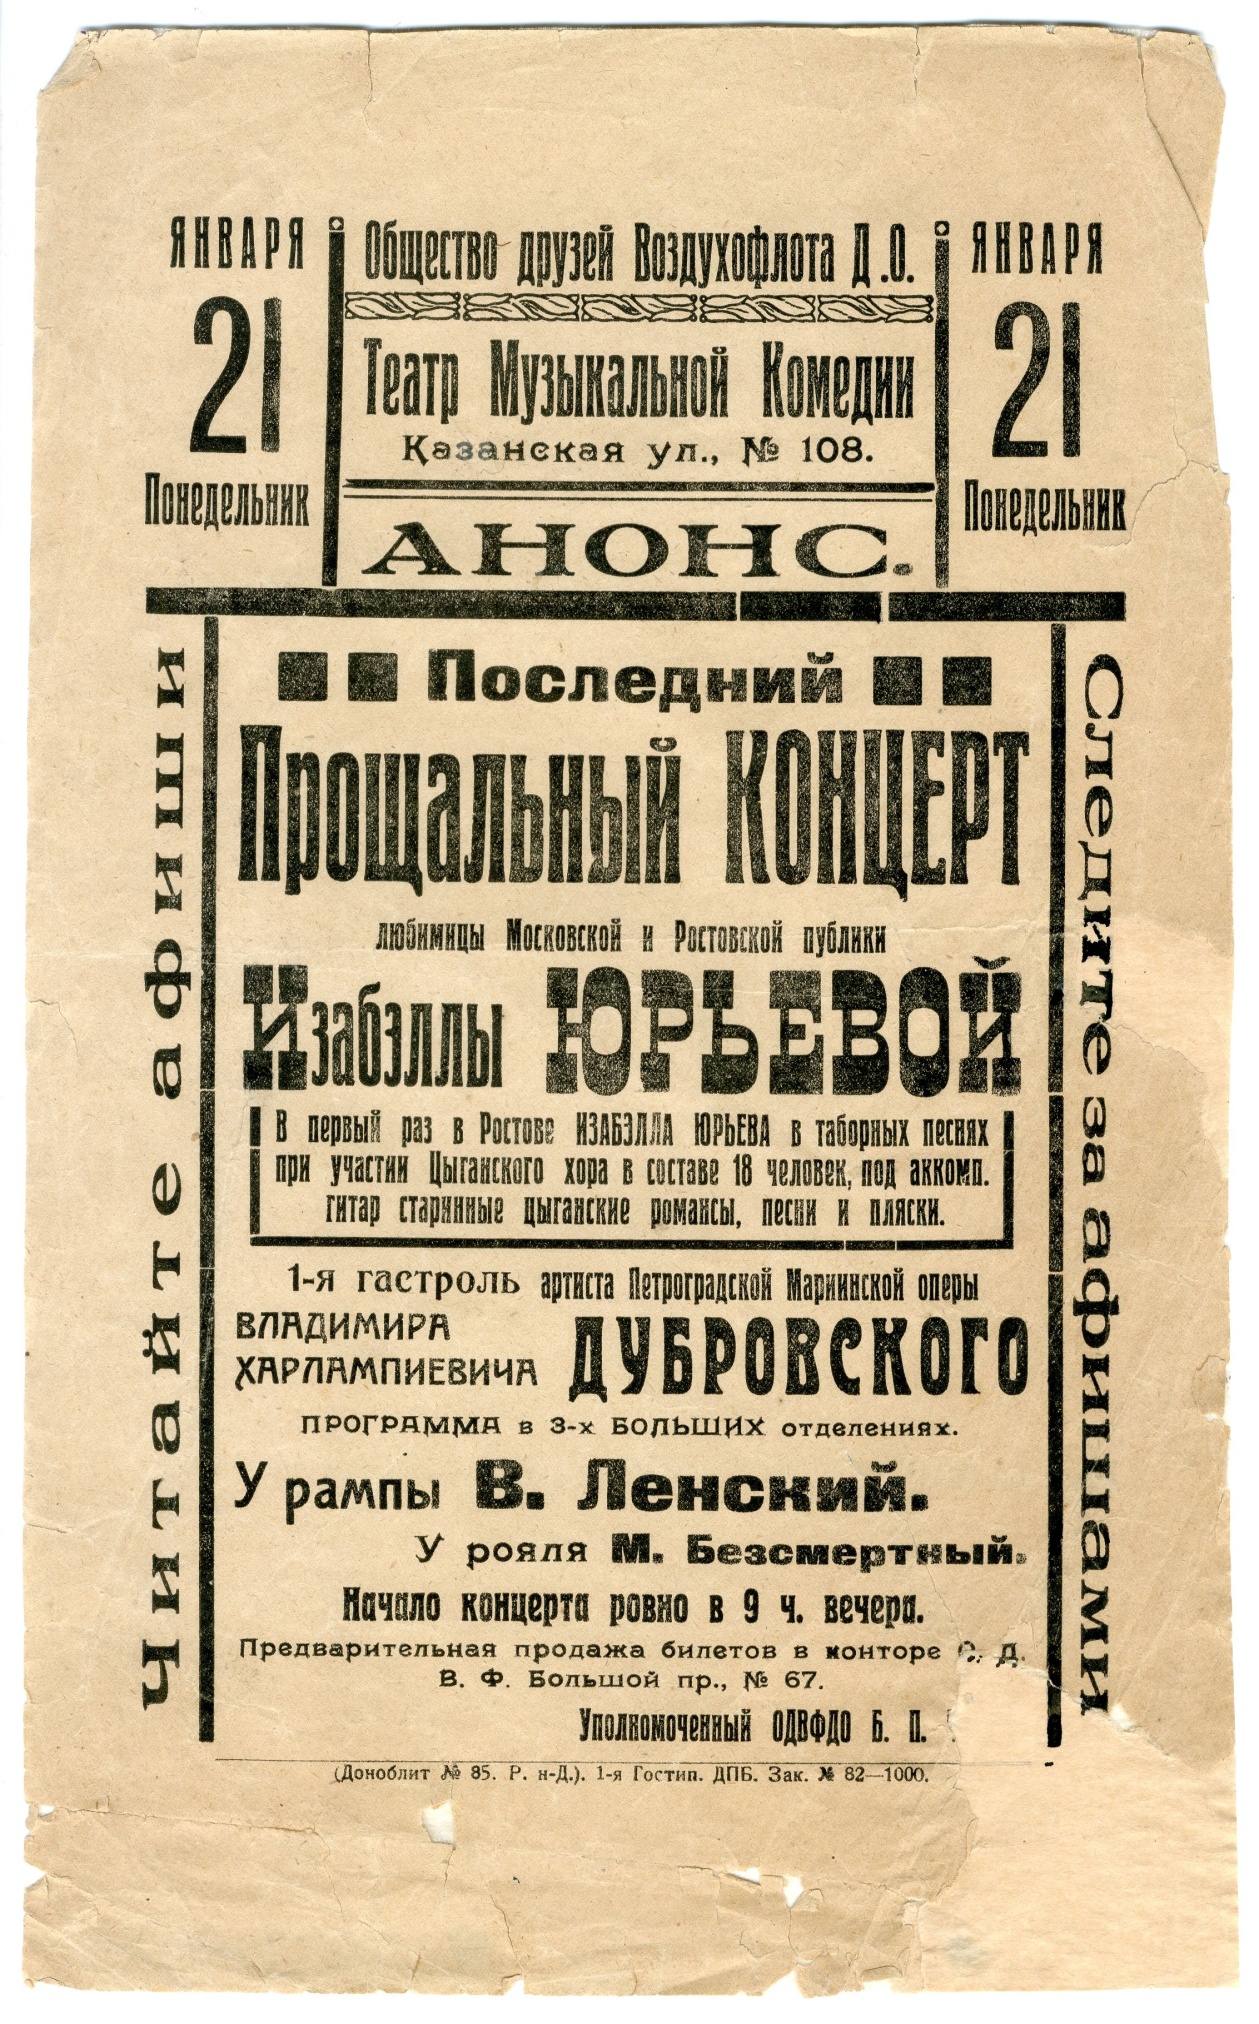 Афиша концерта И. Юрьевой в Ростове-на-Дону. 1923 г.